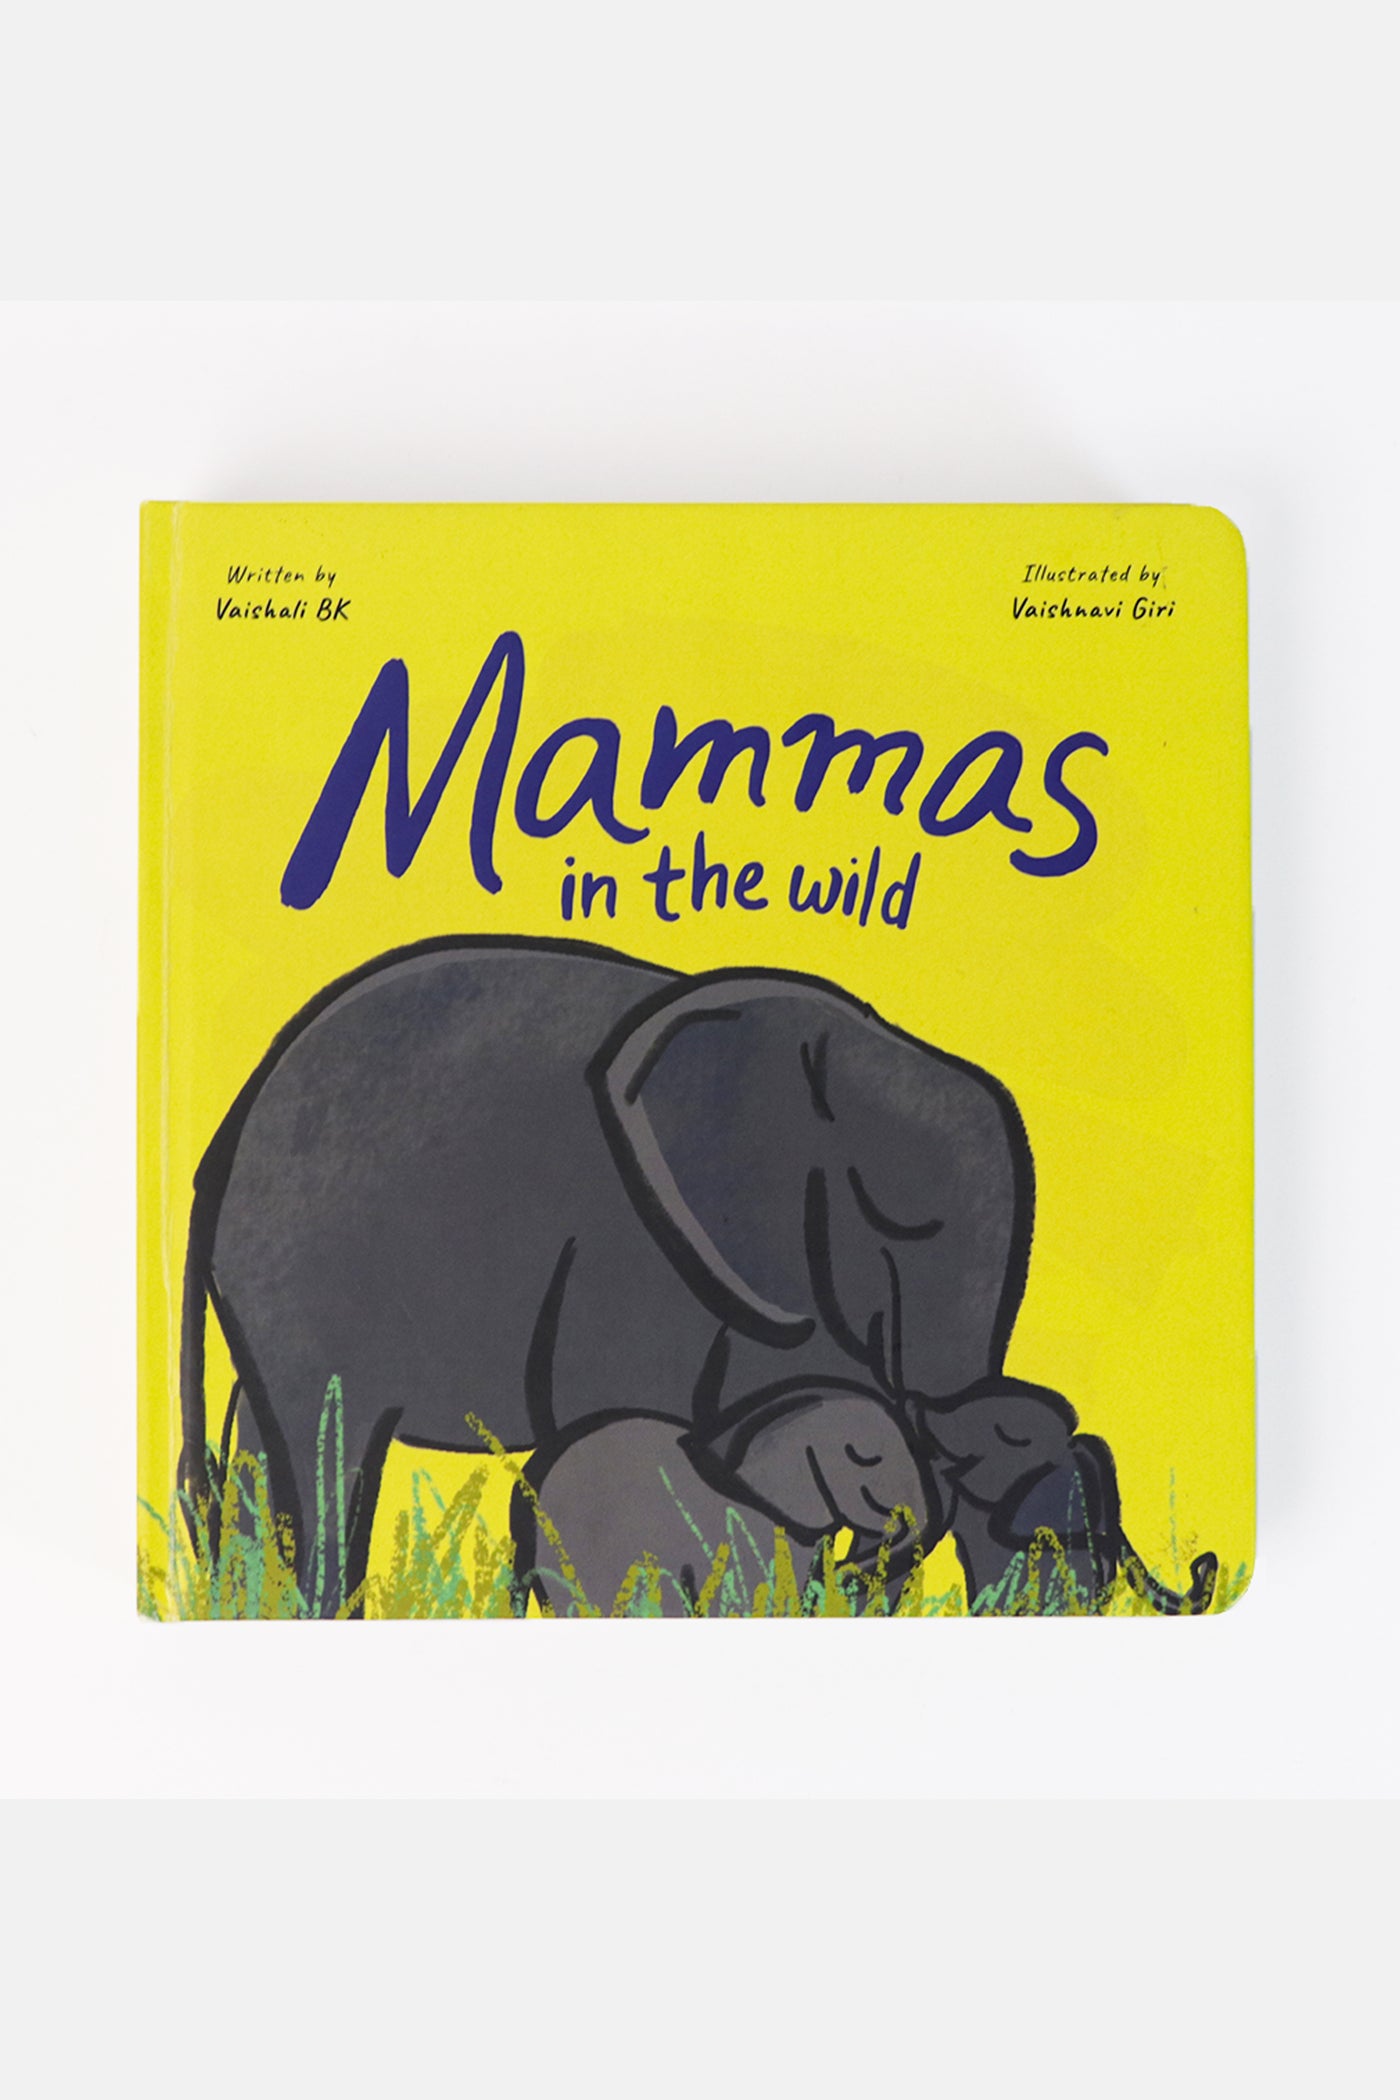 Mammas + Pappas Puzzle & Board Books Combo